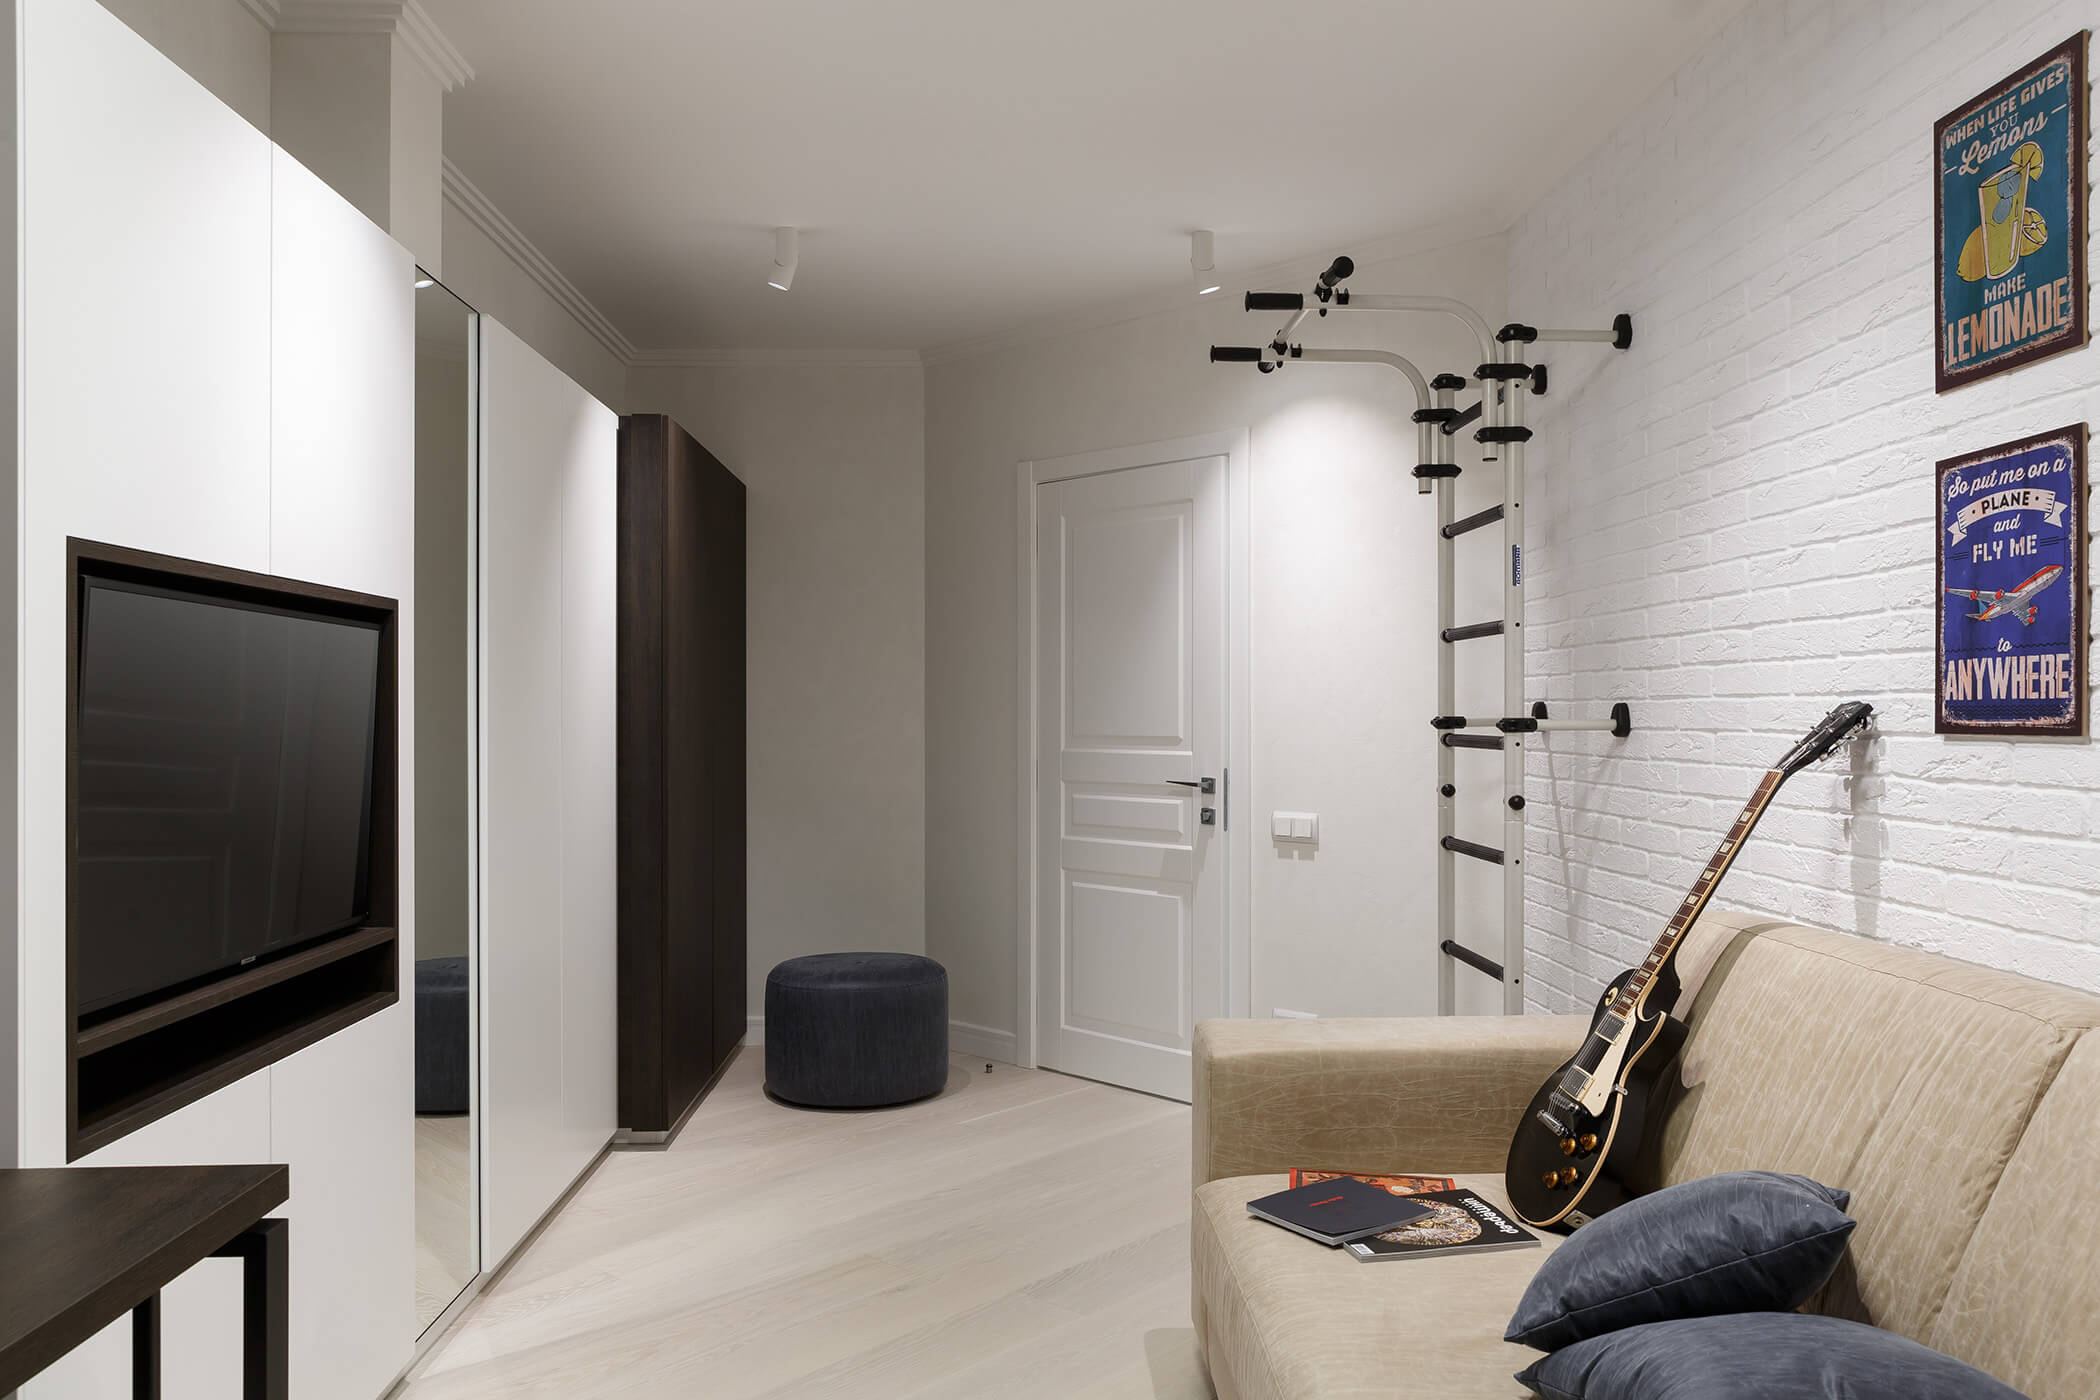 Комната подростка - особый мир, отражающий его увлечения - проекты Setus Design